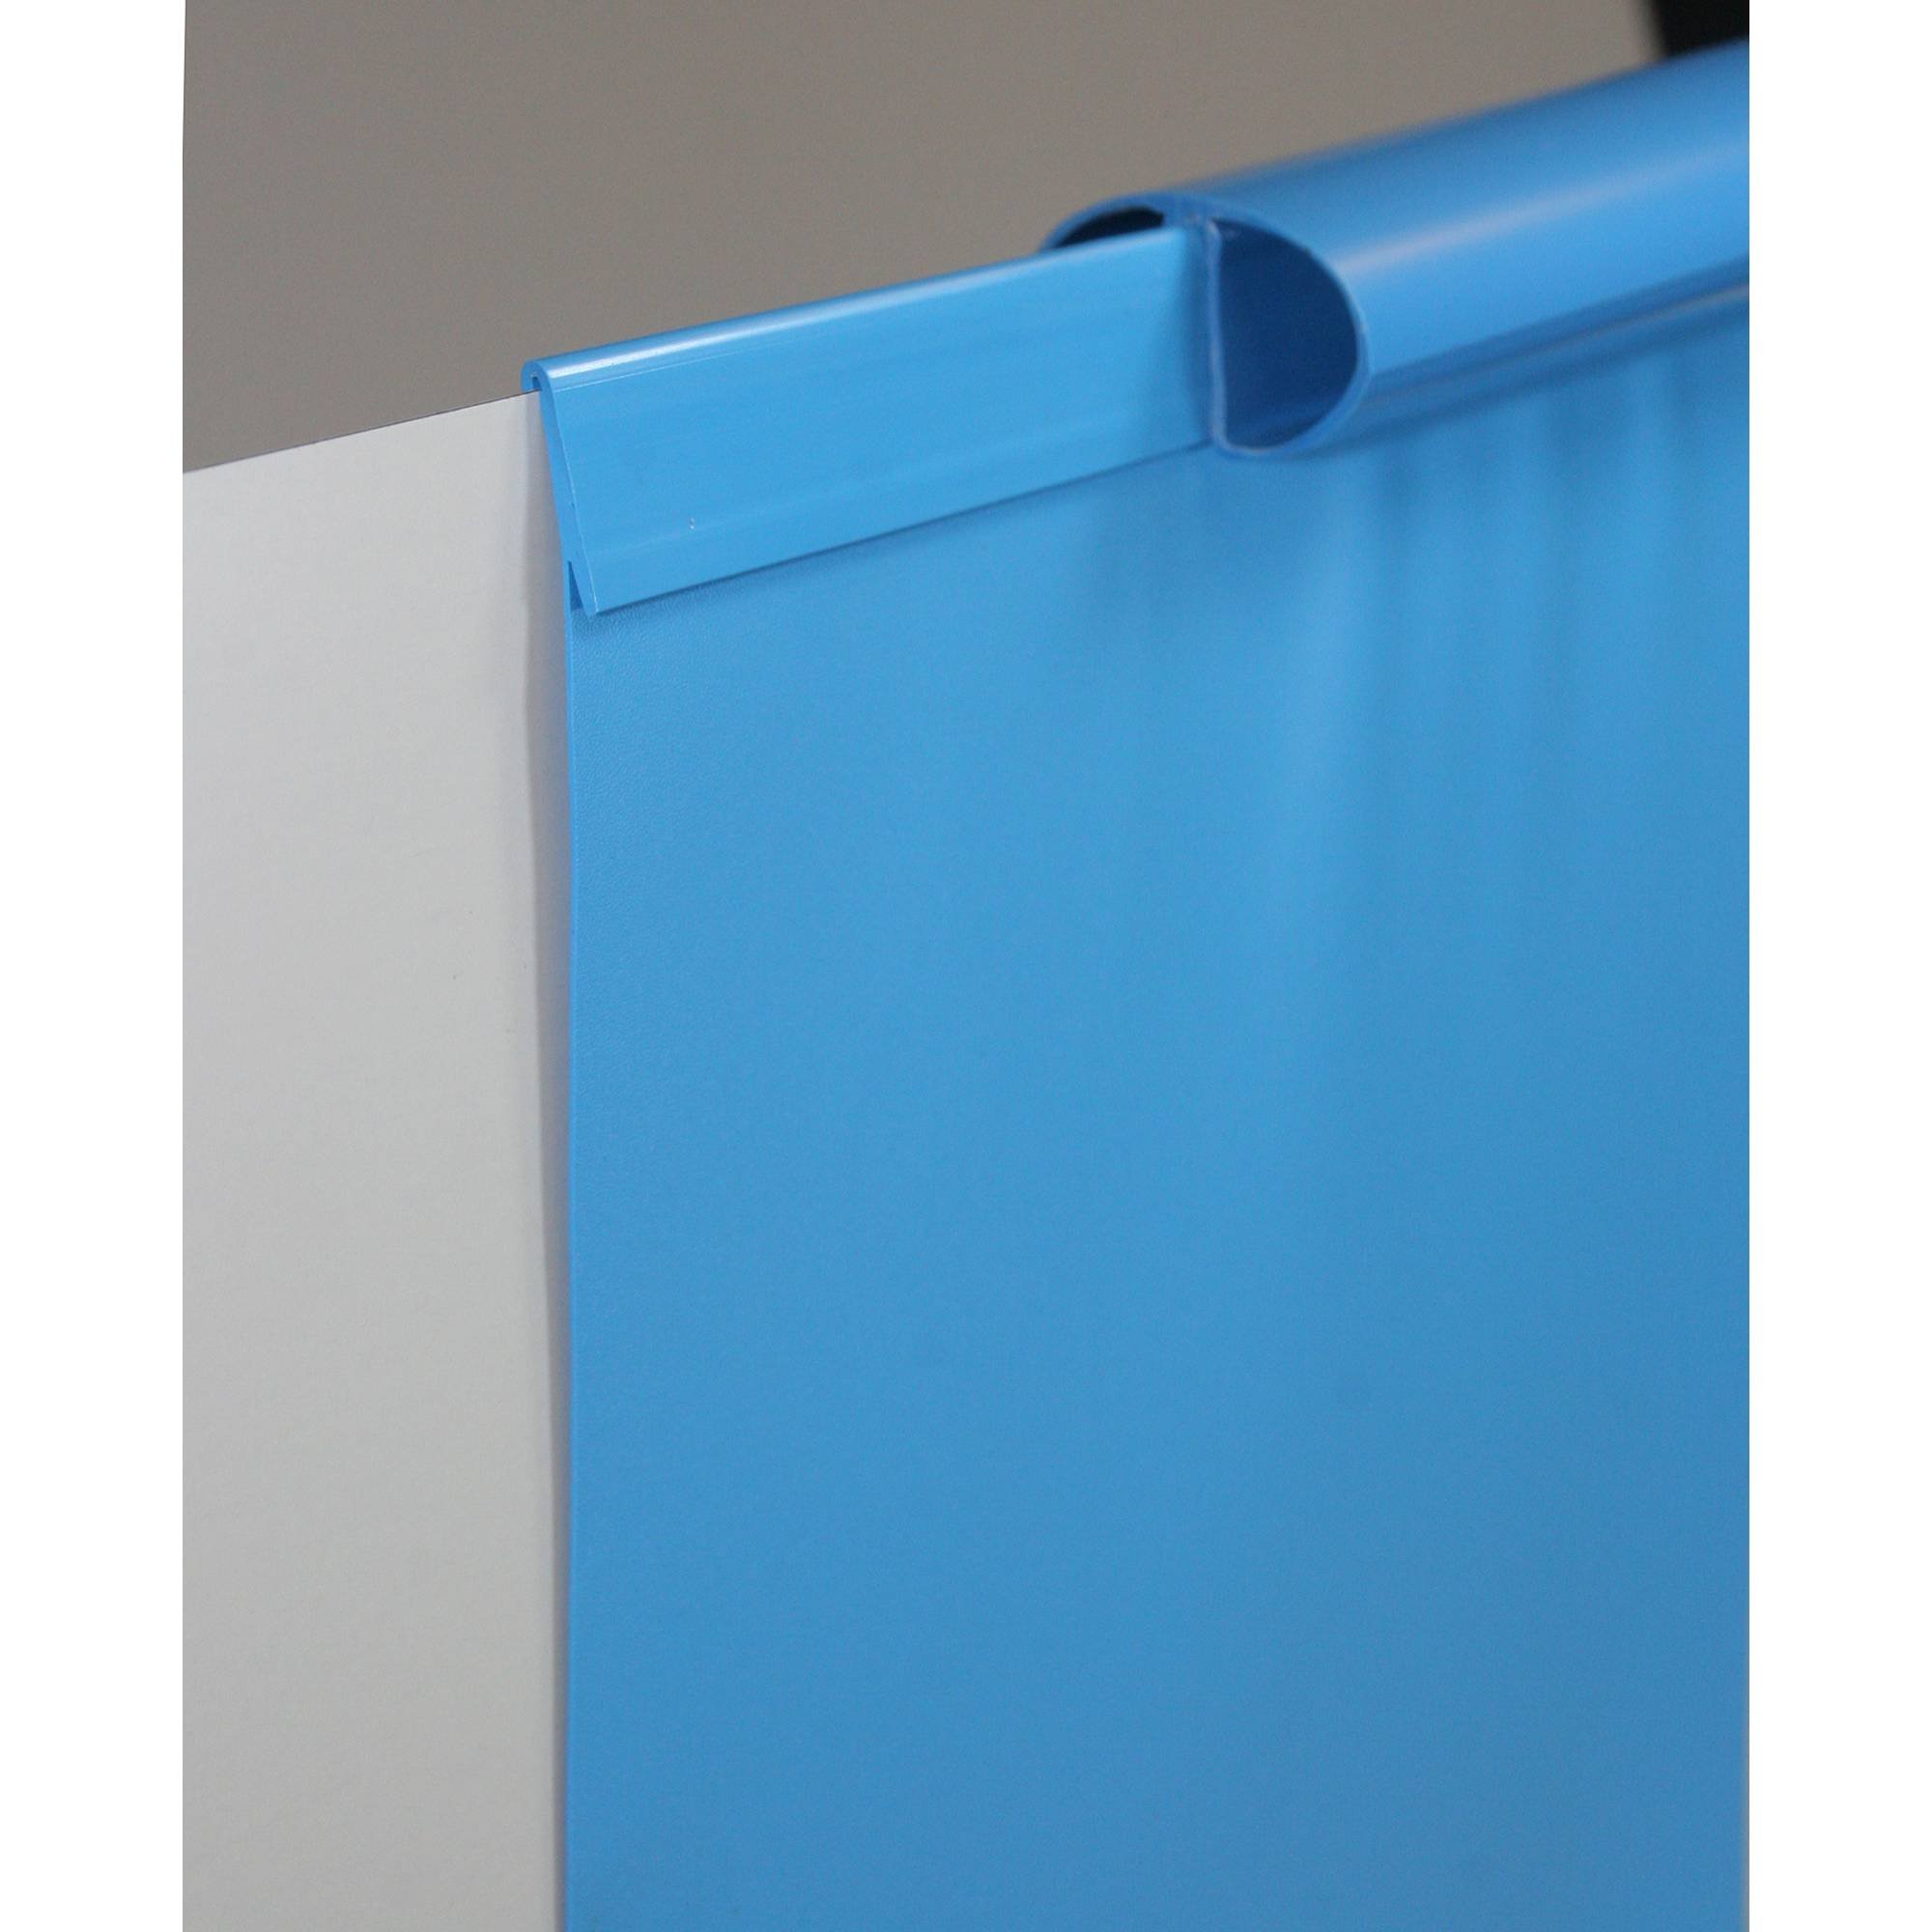 Poolfolie Ersatzfolie Achtformbecken 650x420x120cm - Dicke 0,4mm - Einhängebiese - blau